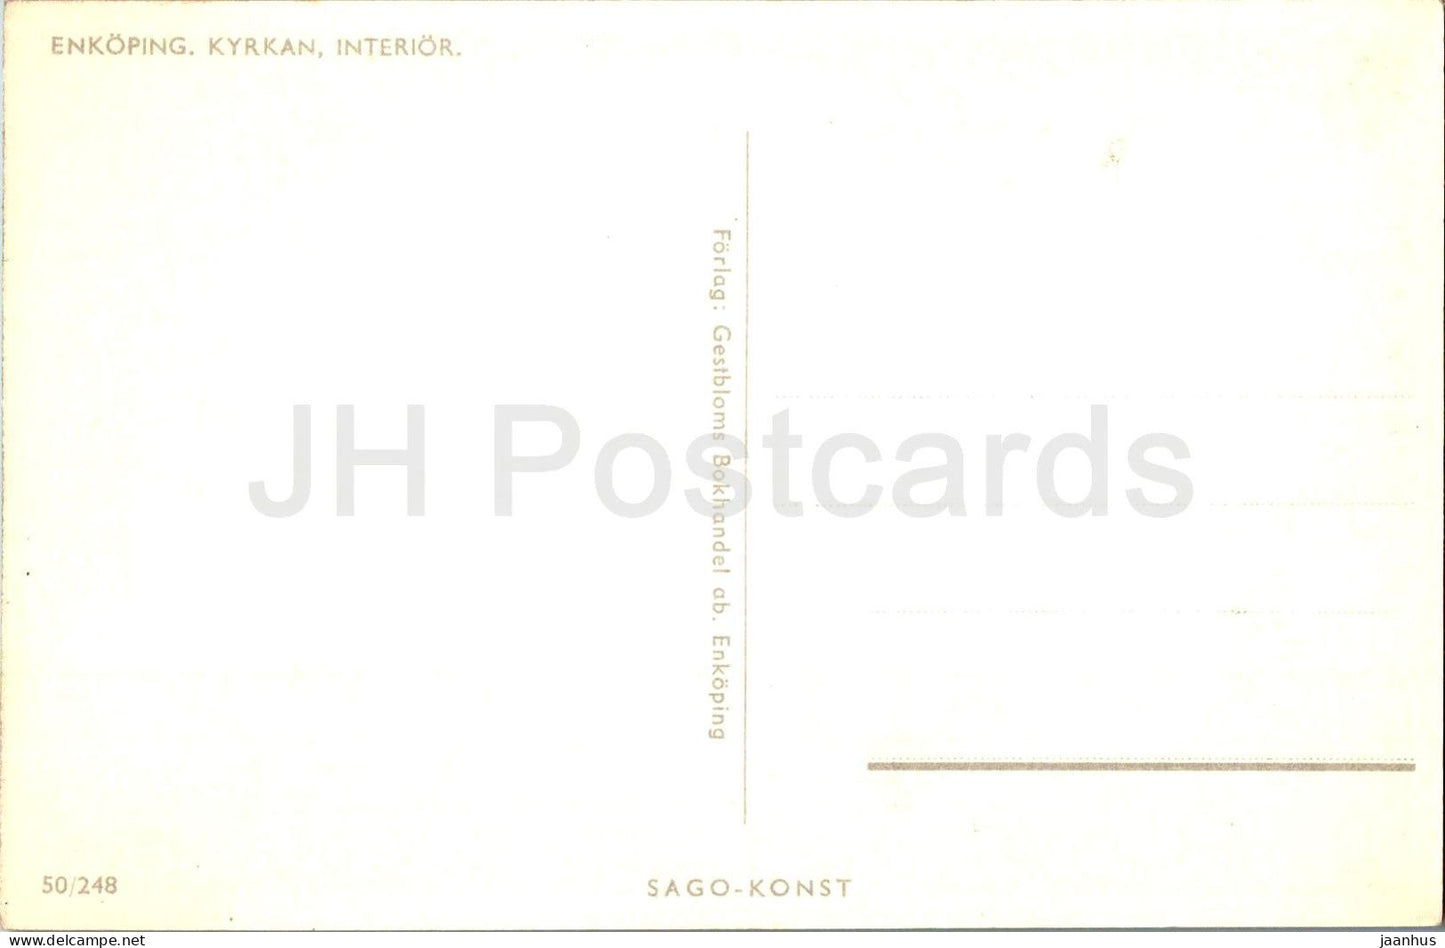 Enkoping Kyrkan - intérieur - église - 50/248 - carte postale ancienne - Suède - inutilisé 